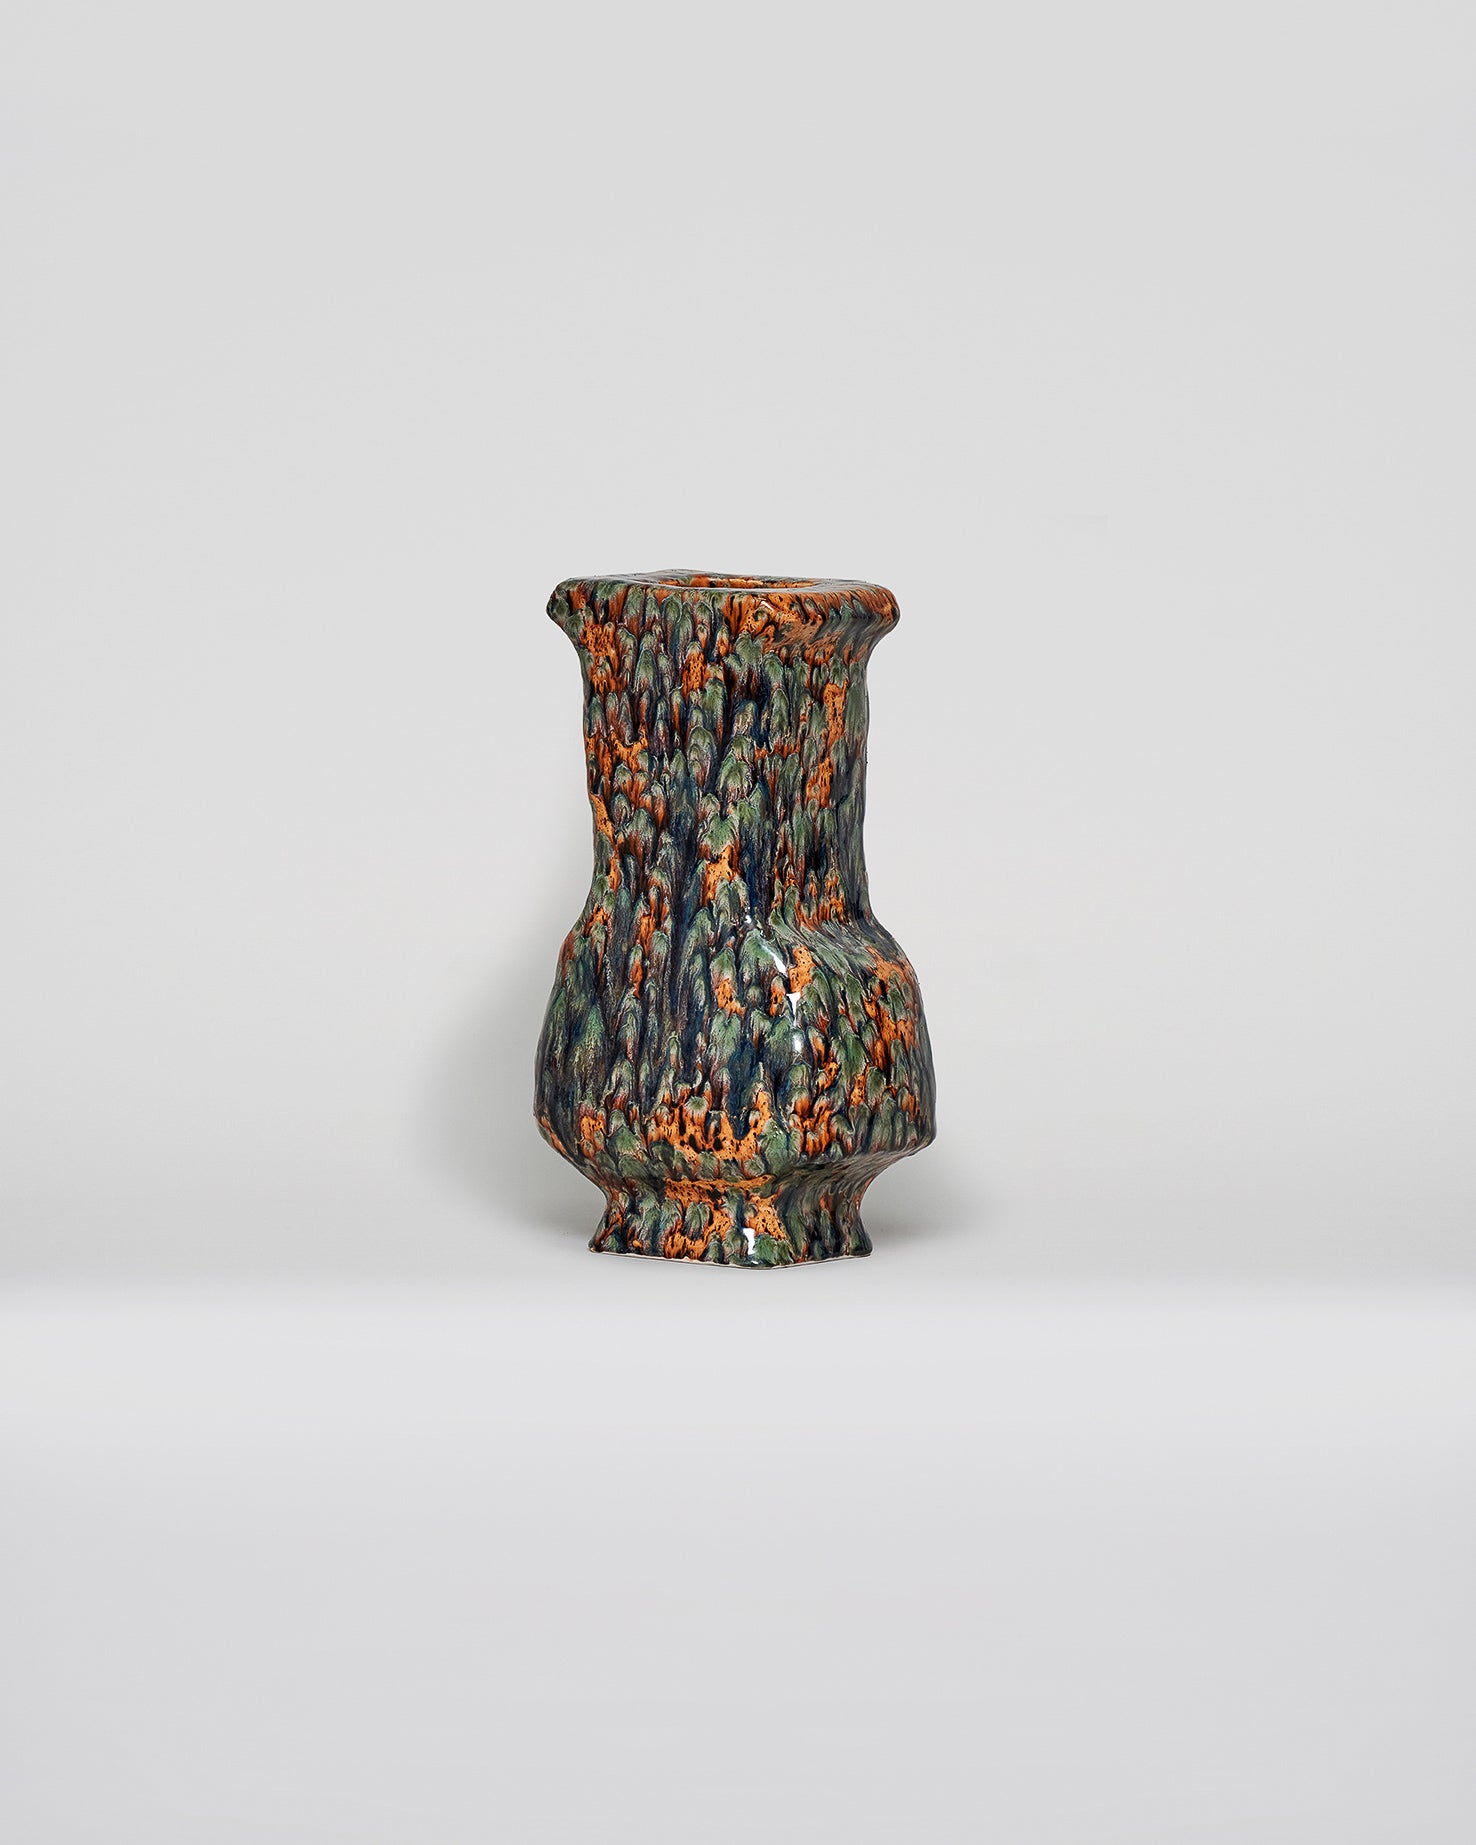 Glazed Ceramic vessel by Eva Makes Ceramics